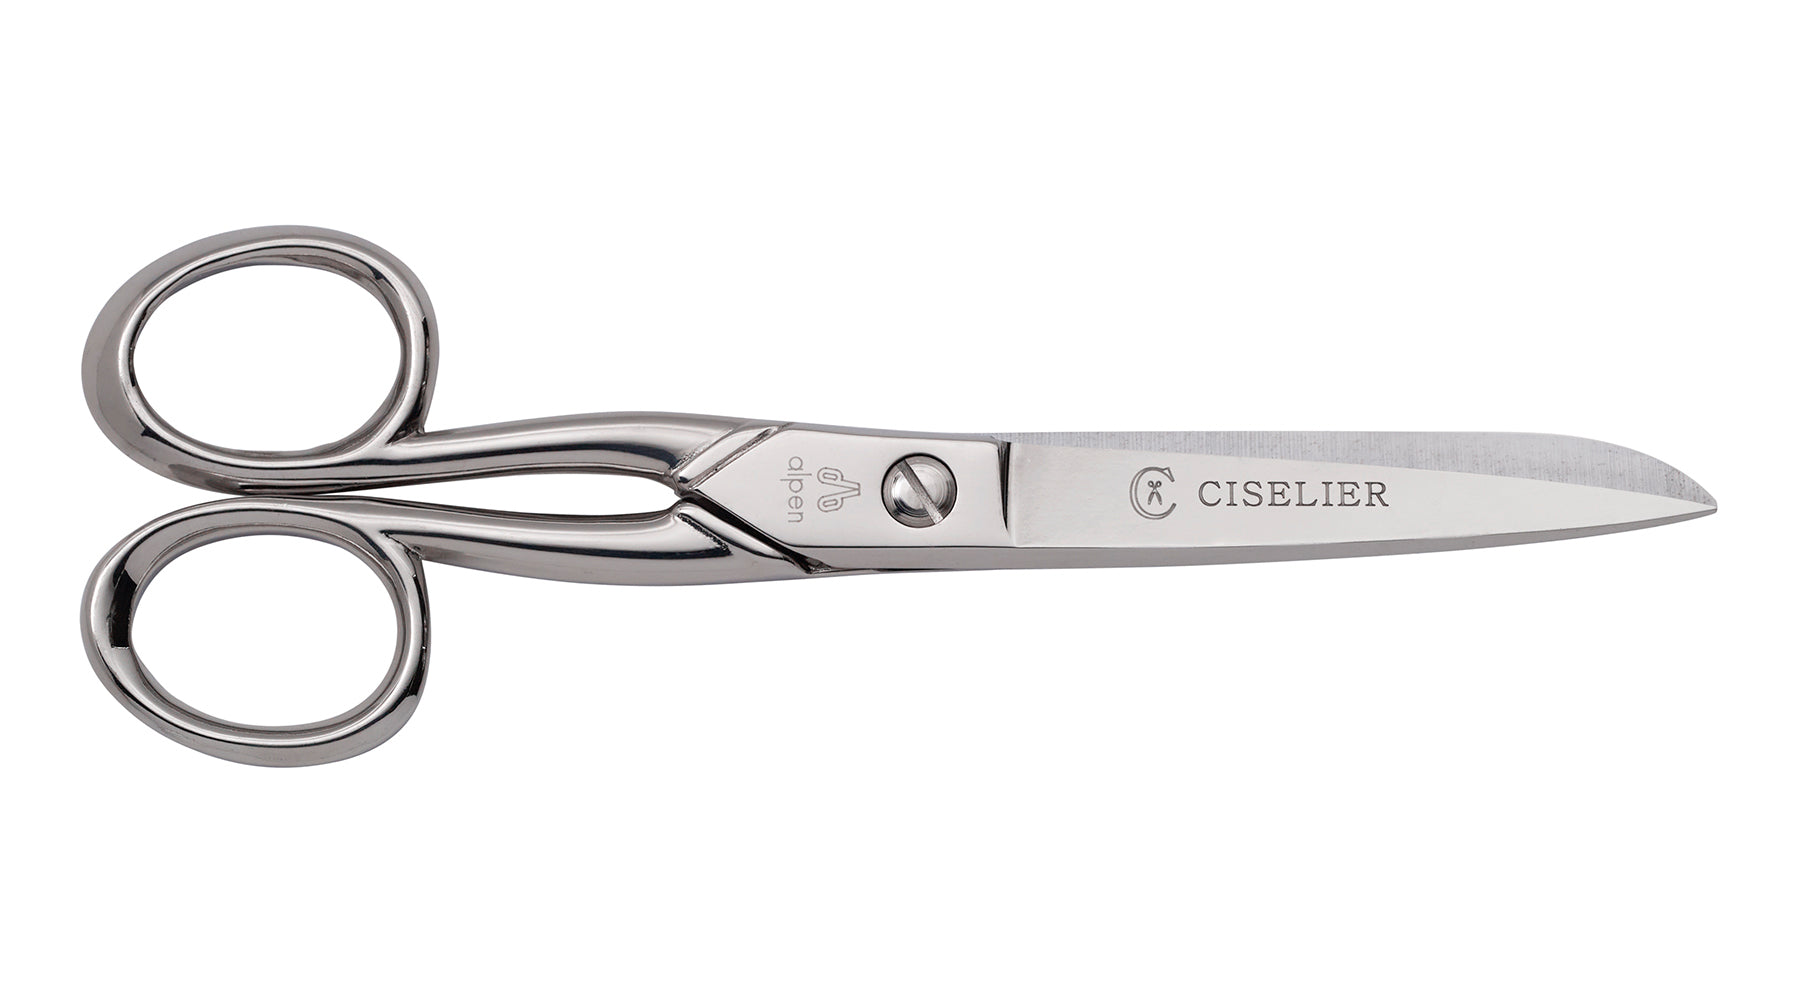 Alpen left-handed office scissors